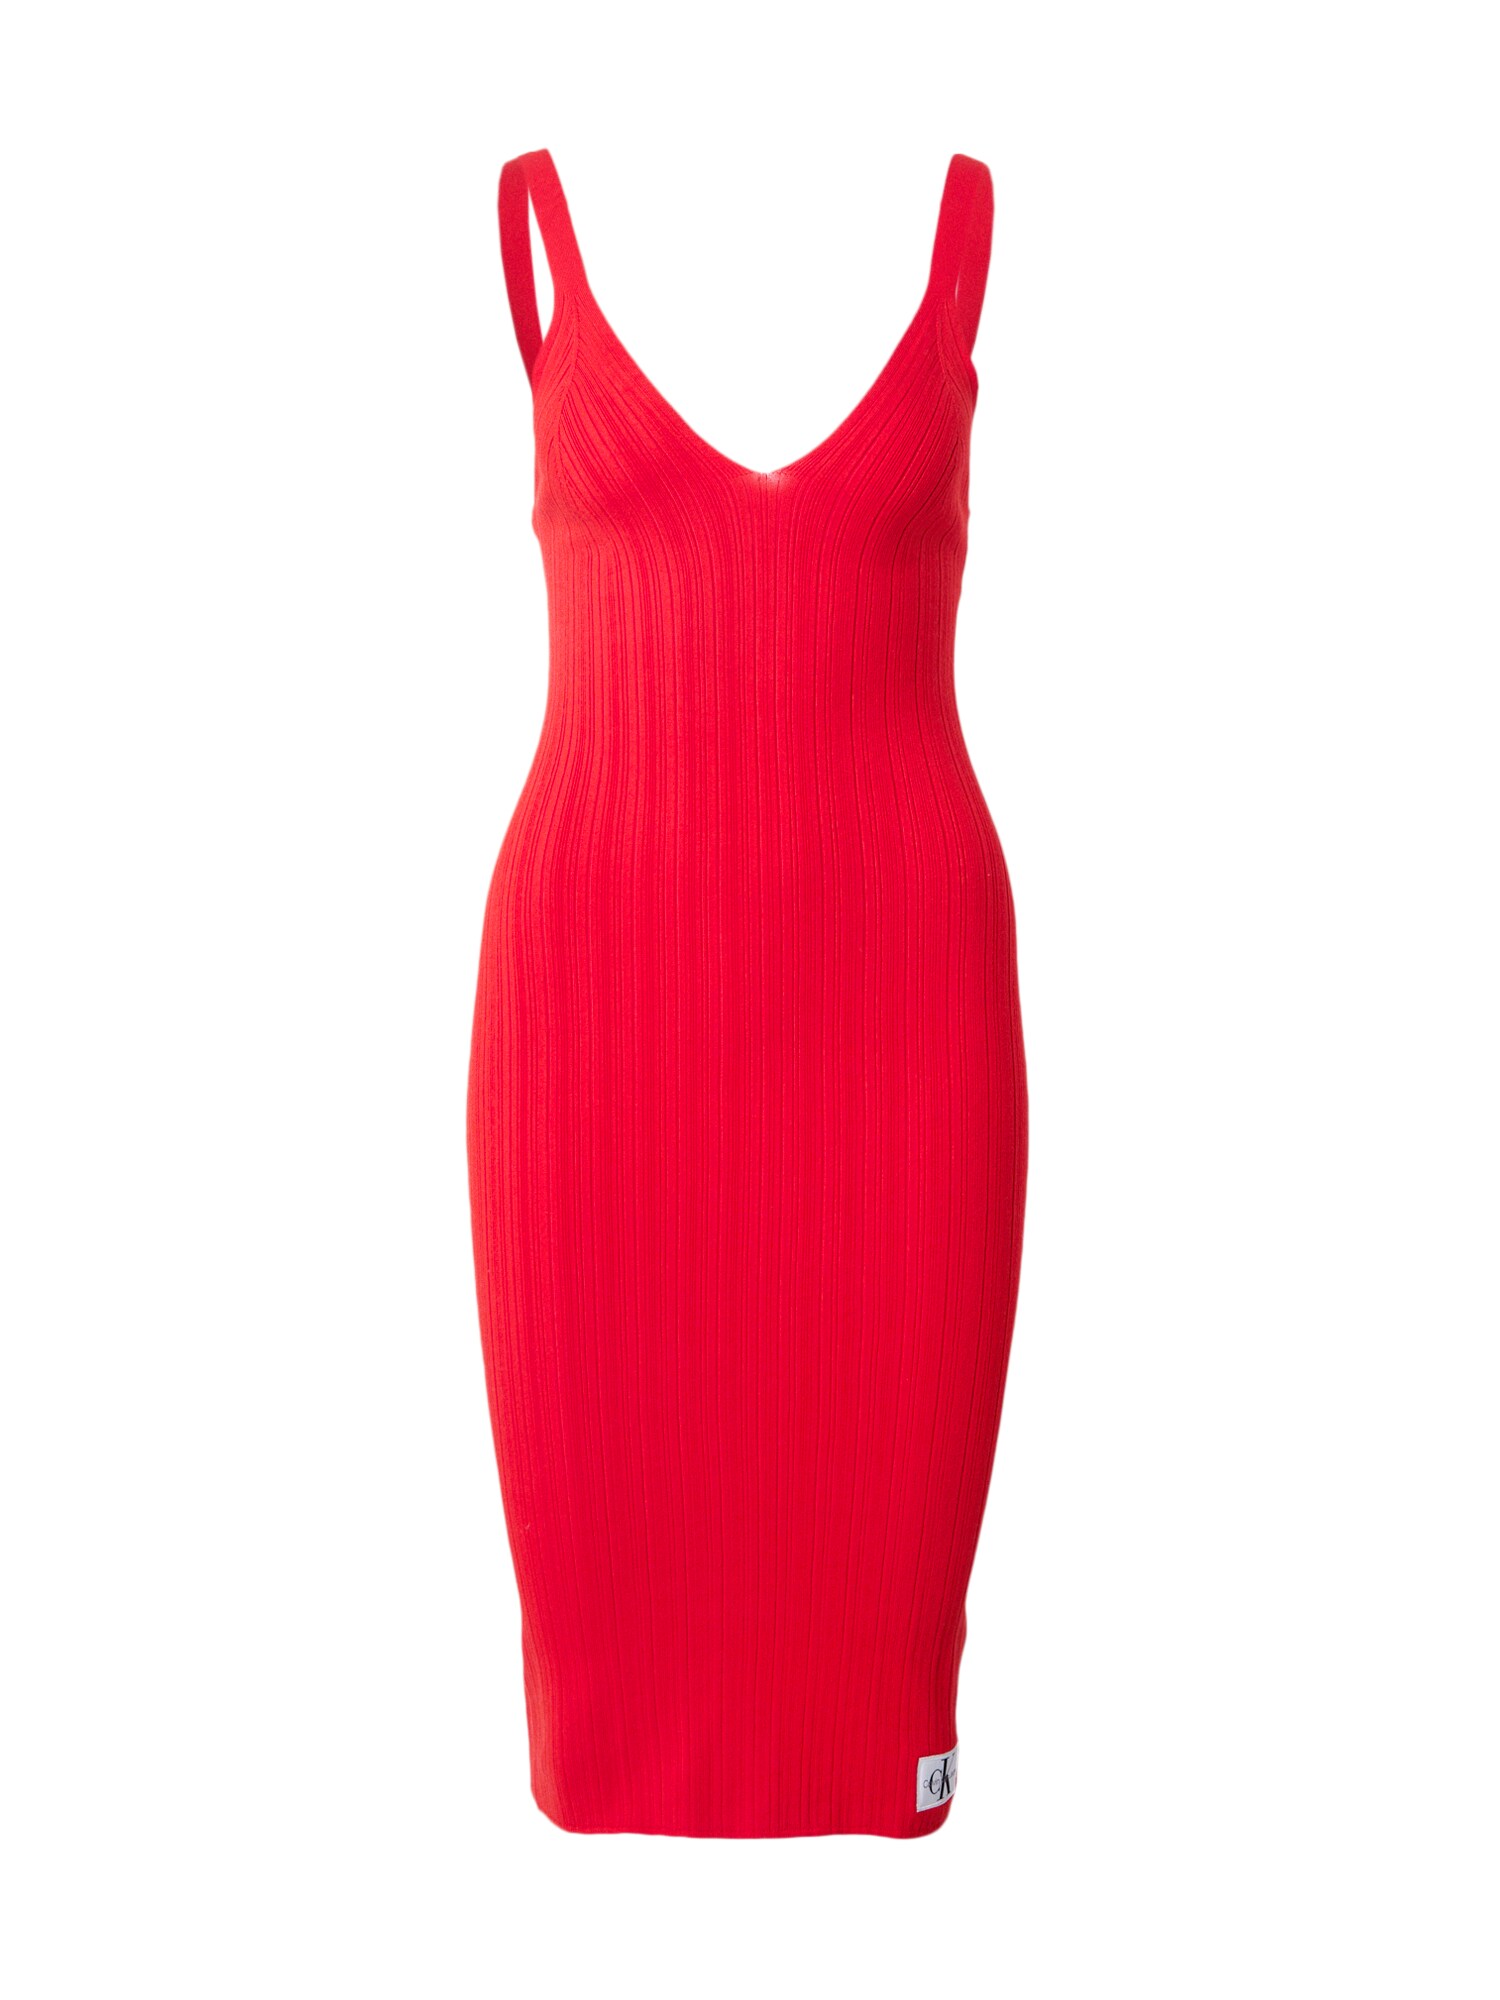 Preisvergleich für Kleid, in GTIN: 8720109334678 Rot, | XS, Polyamid, der Ladendirekt Größe aus Farbe